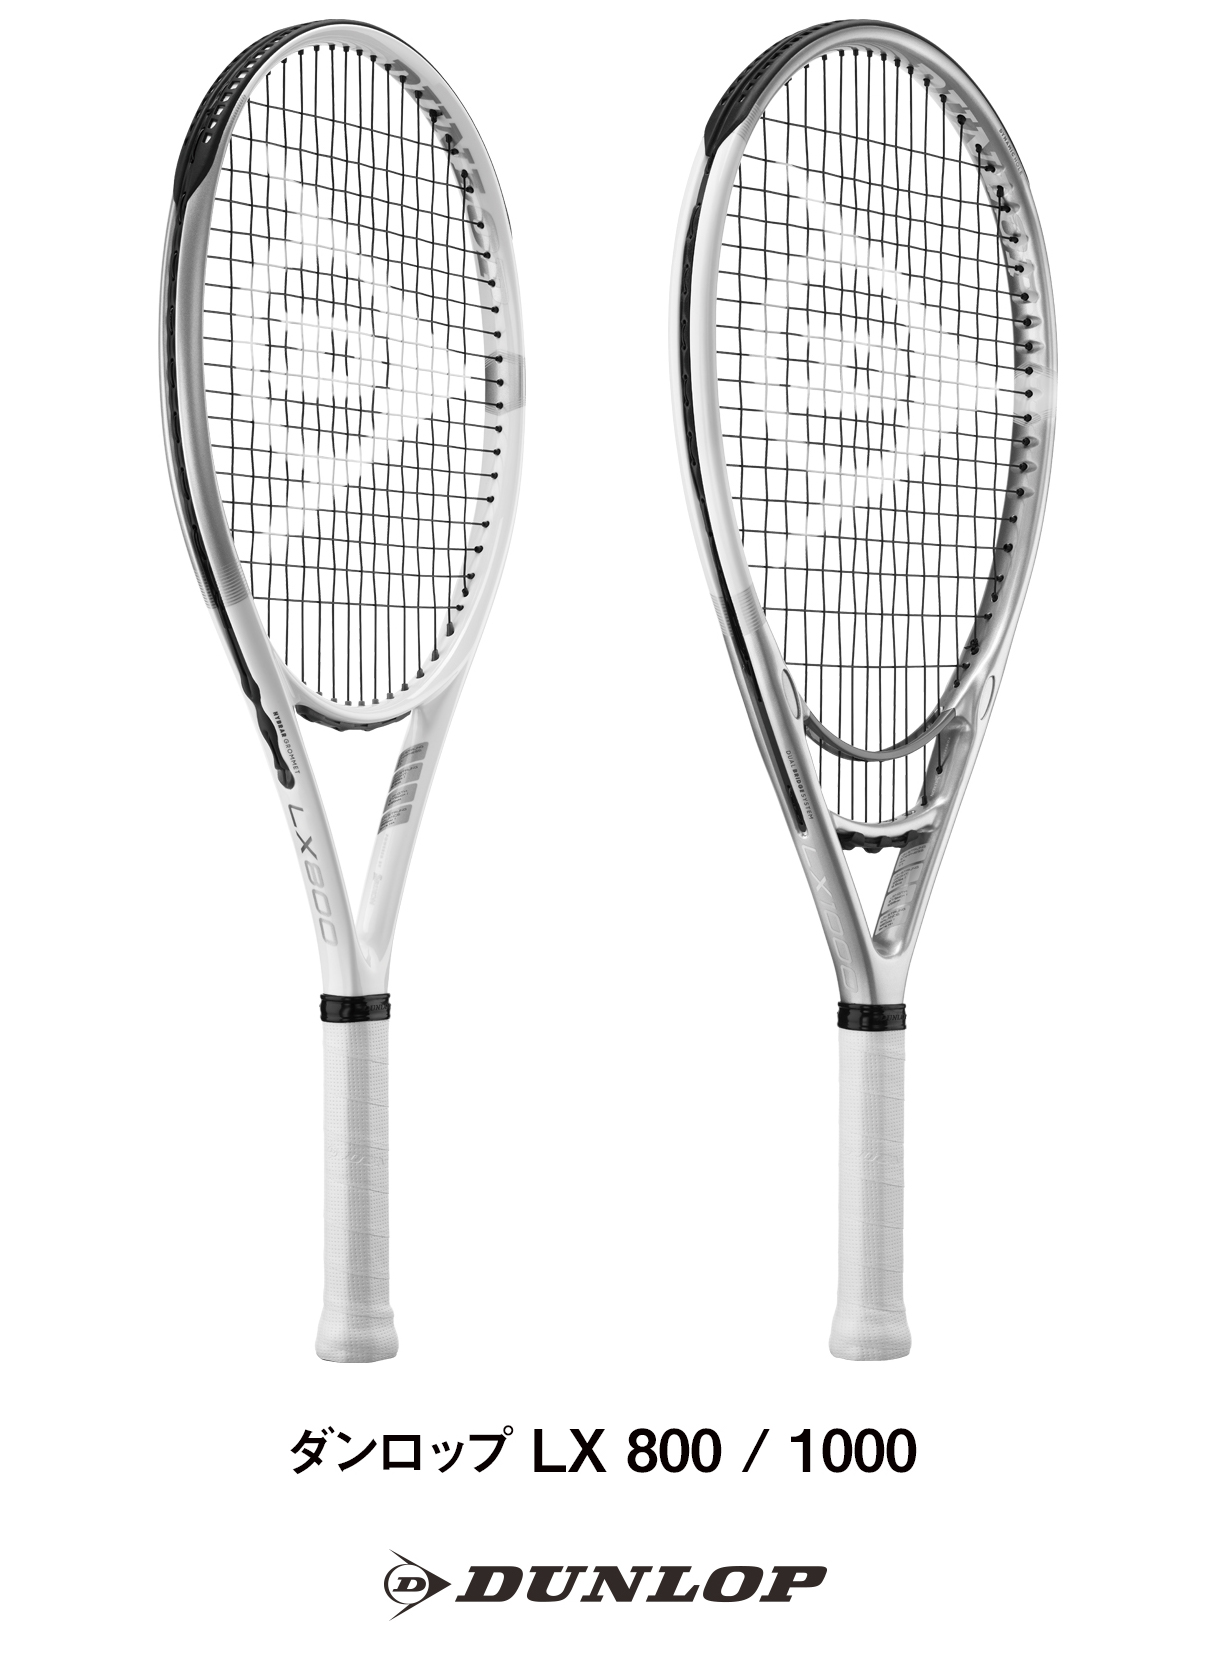 ダンロップテニスラケット「LX」シリーズを新発売 | NEWSCAST